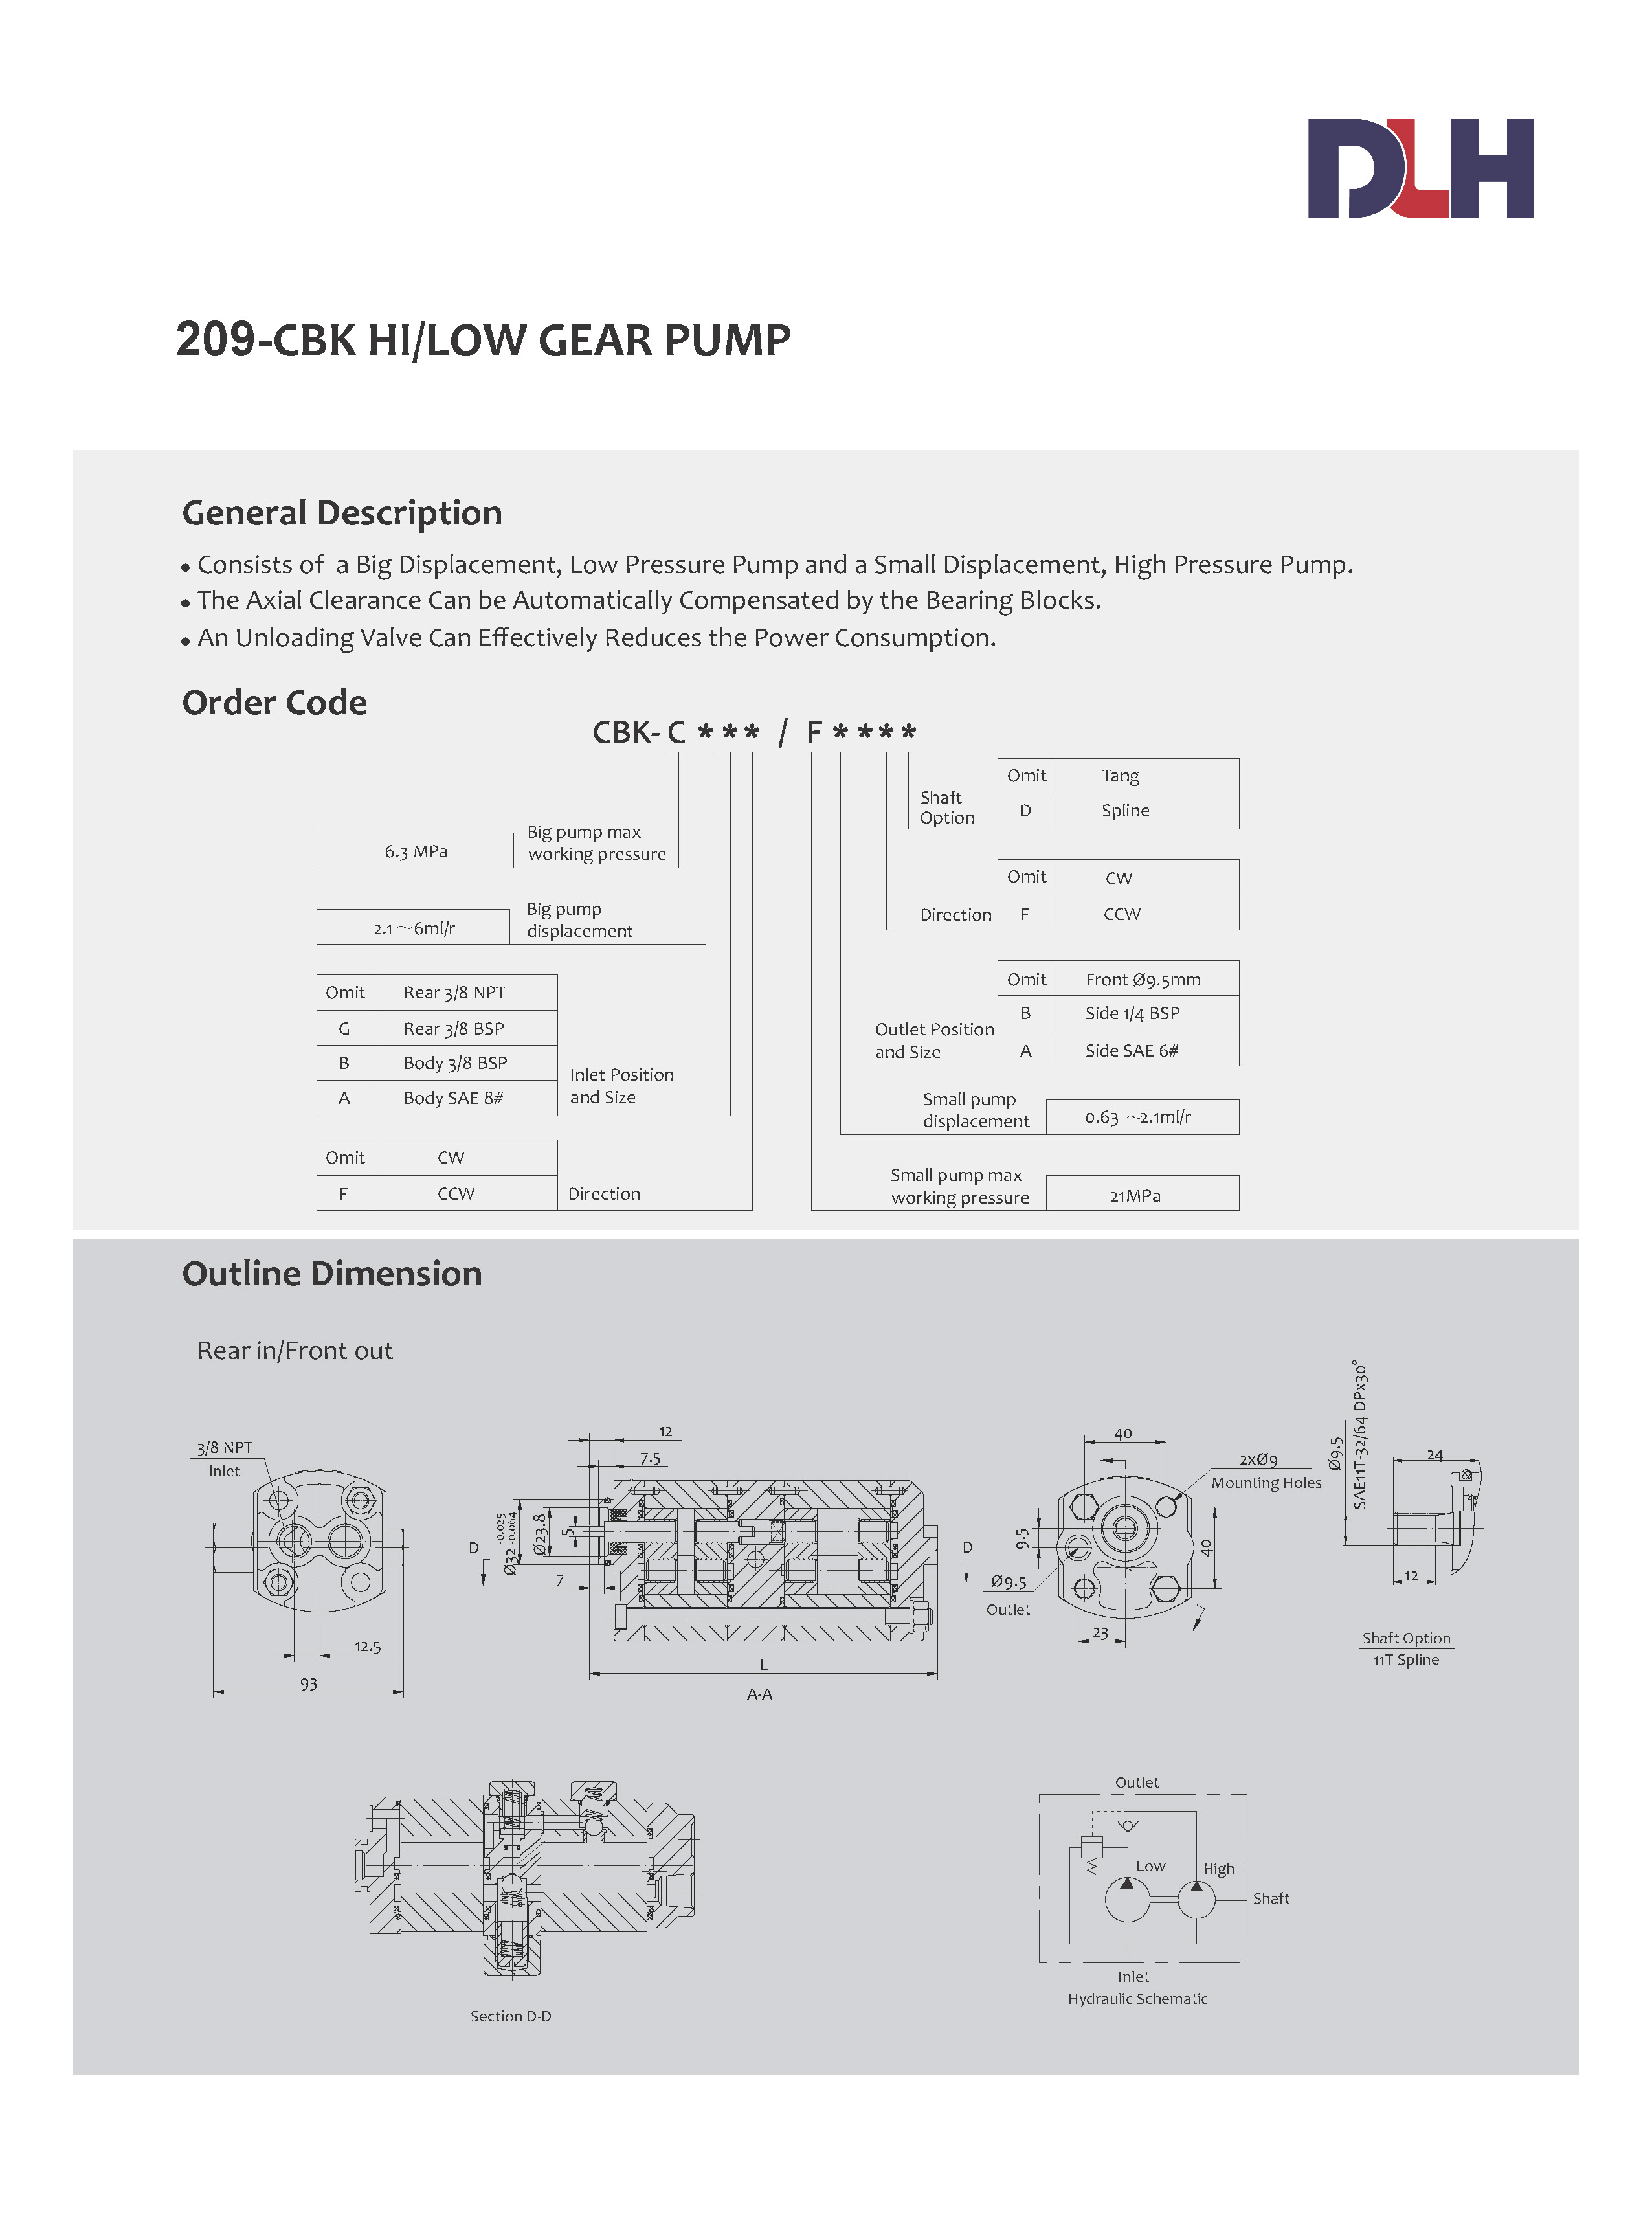 CBK Hi/Low Gear Pumps